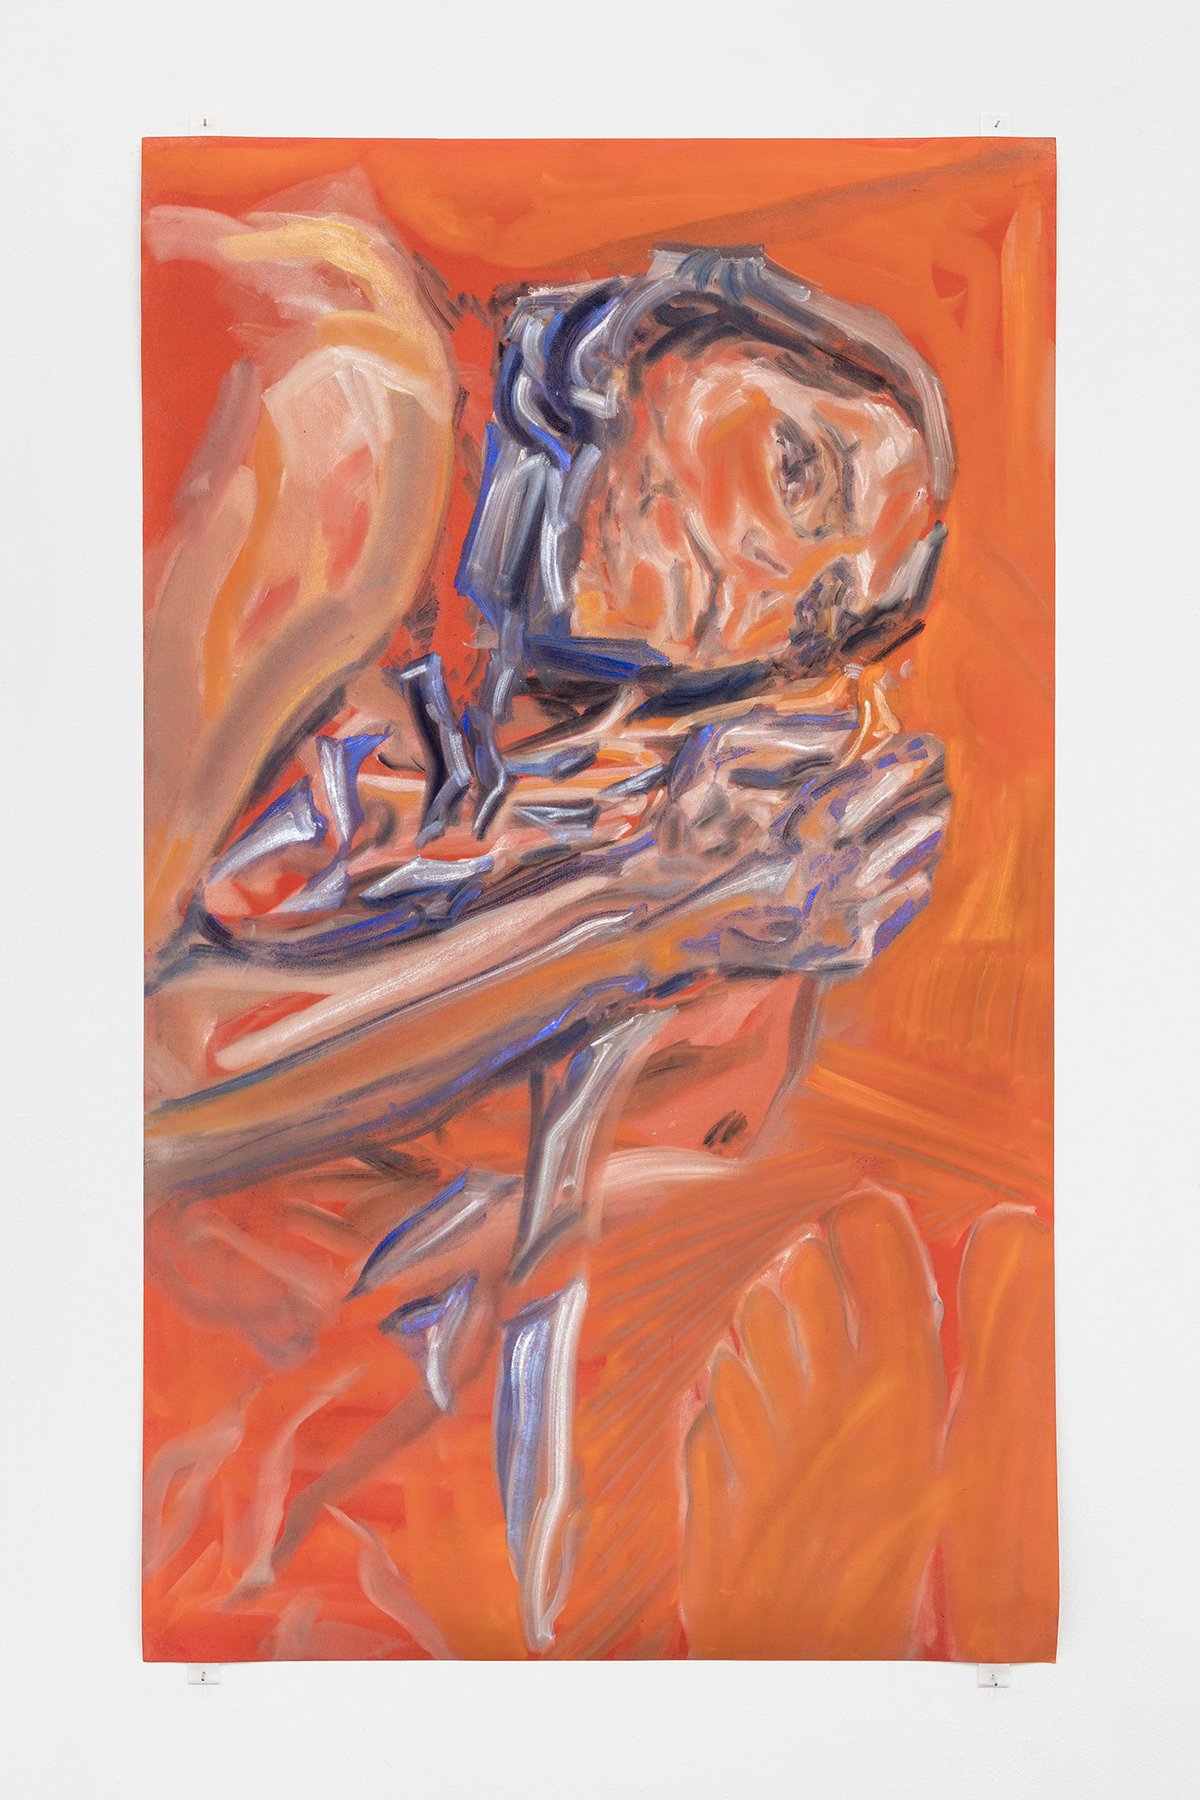 Evelyn PlaschgAlbert chromed, 2021Pigment on Paper99.5 x 60 cm